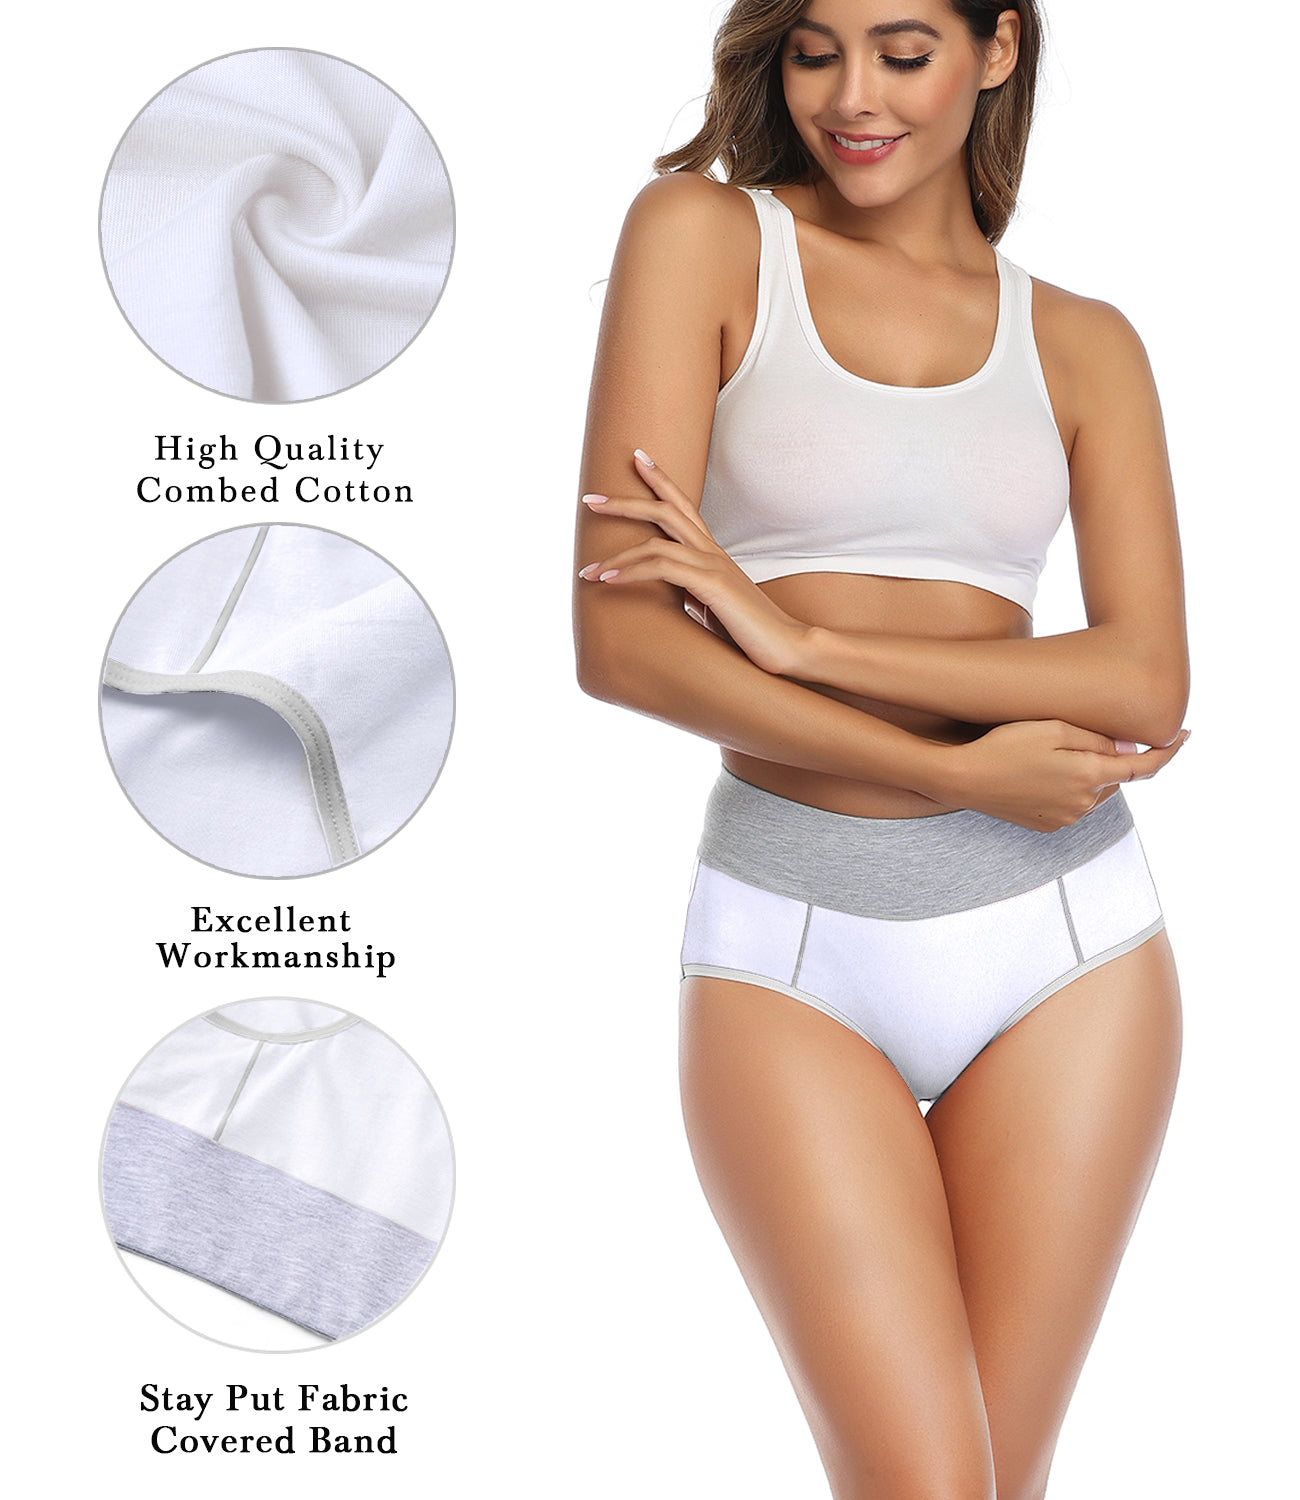 wirarpa Women’s High Waisted Cotton Briefs Underwear 5 Pack